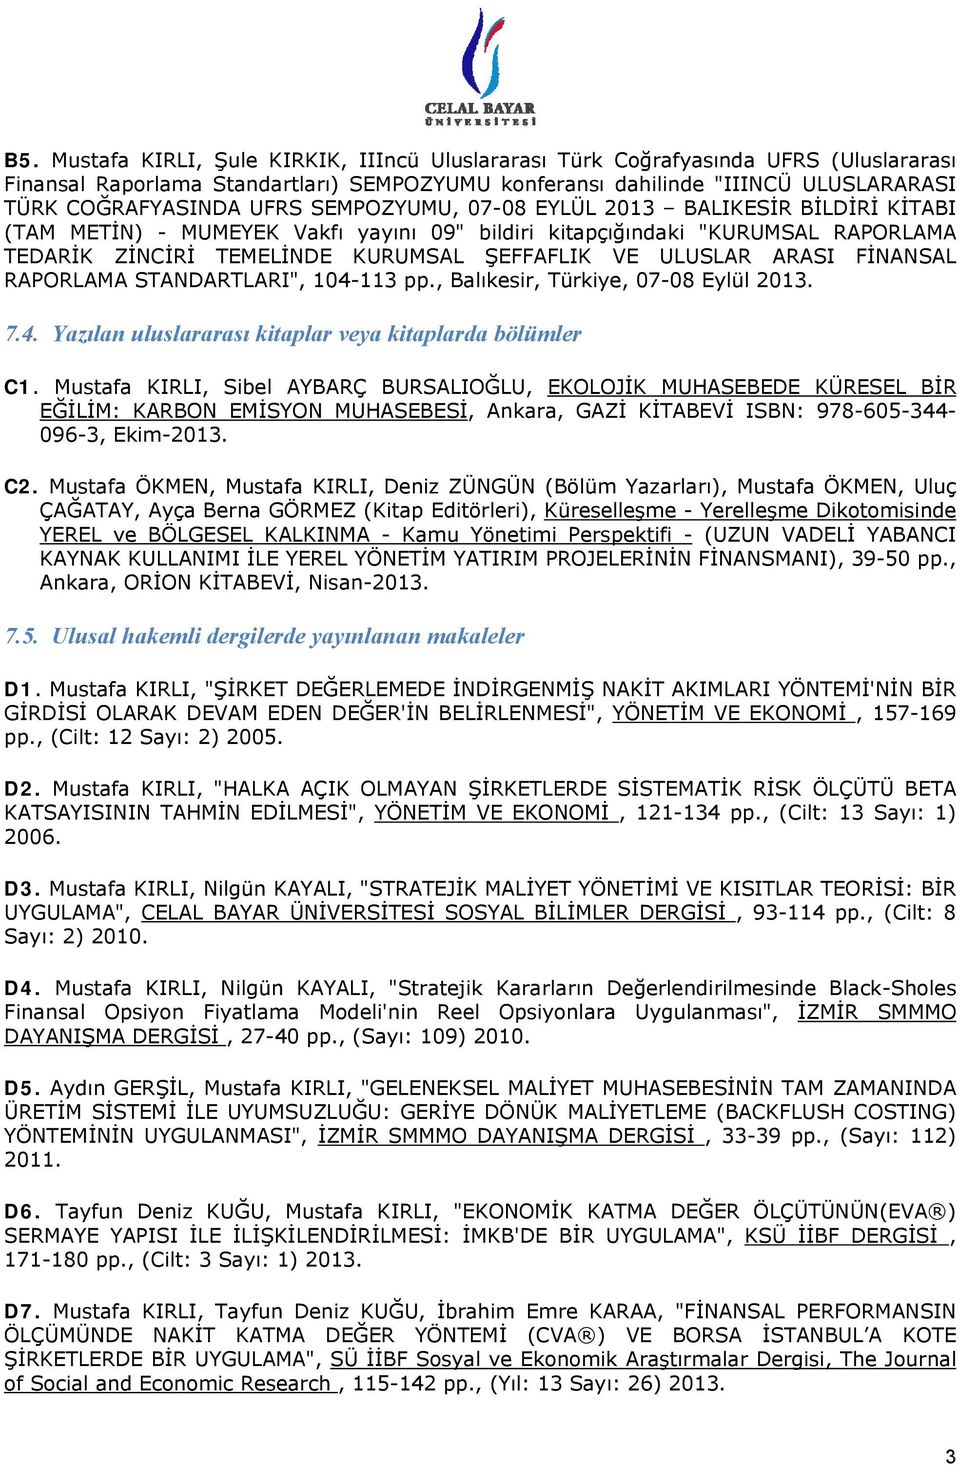 FİNANSAL RAPORLAMA STANDARTLARI", 104-113 pp., Balıkesir, Türkiye, 07-08 Eylül 2013. 7.4. Yazılan uluslararası kitaplar veya kitaplarda bölümler C1.